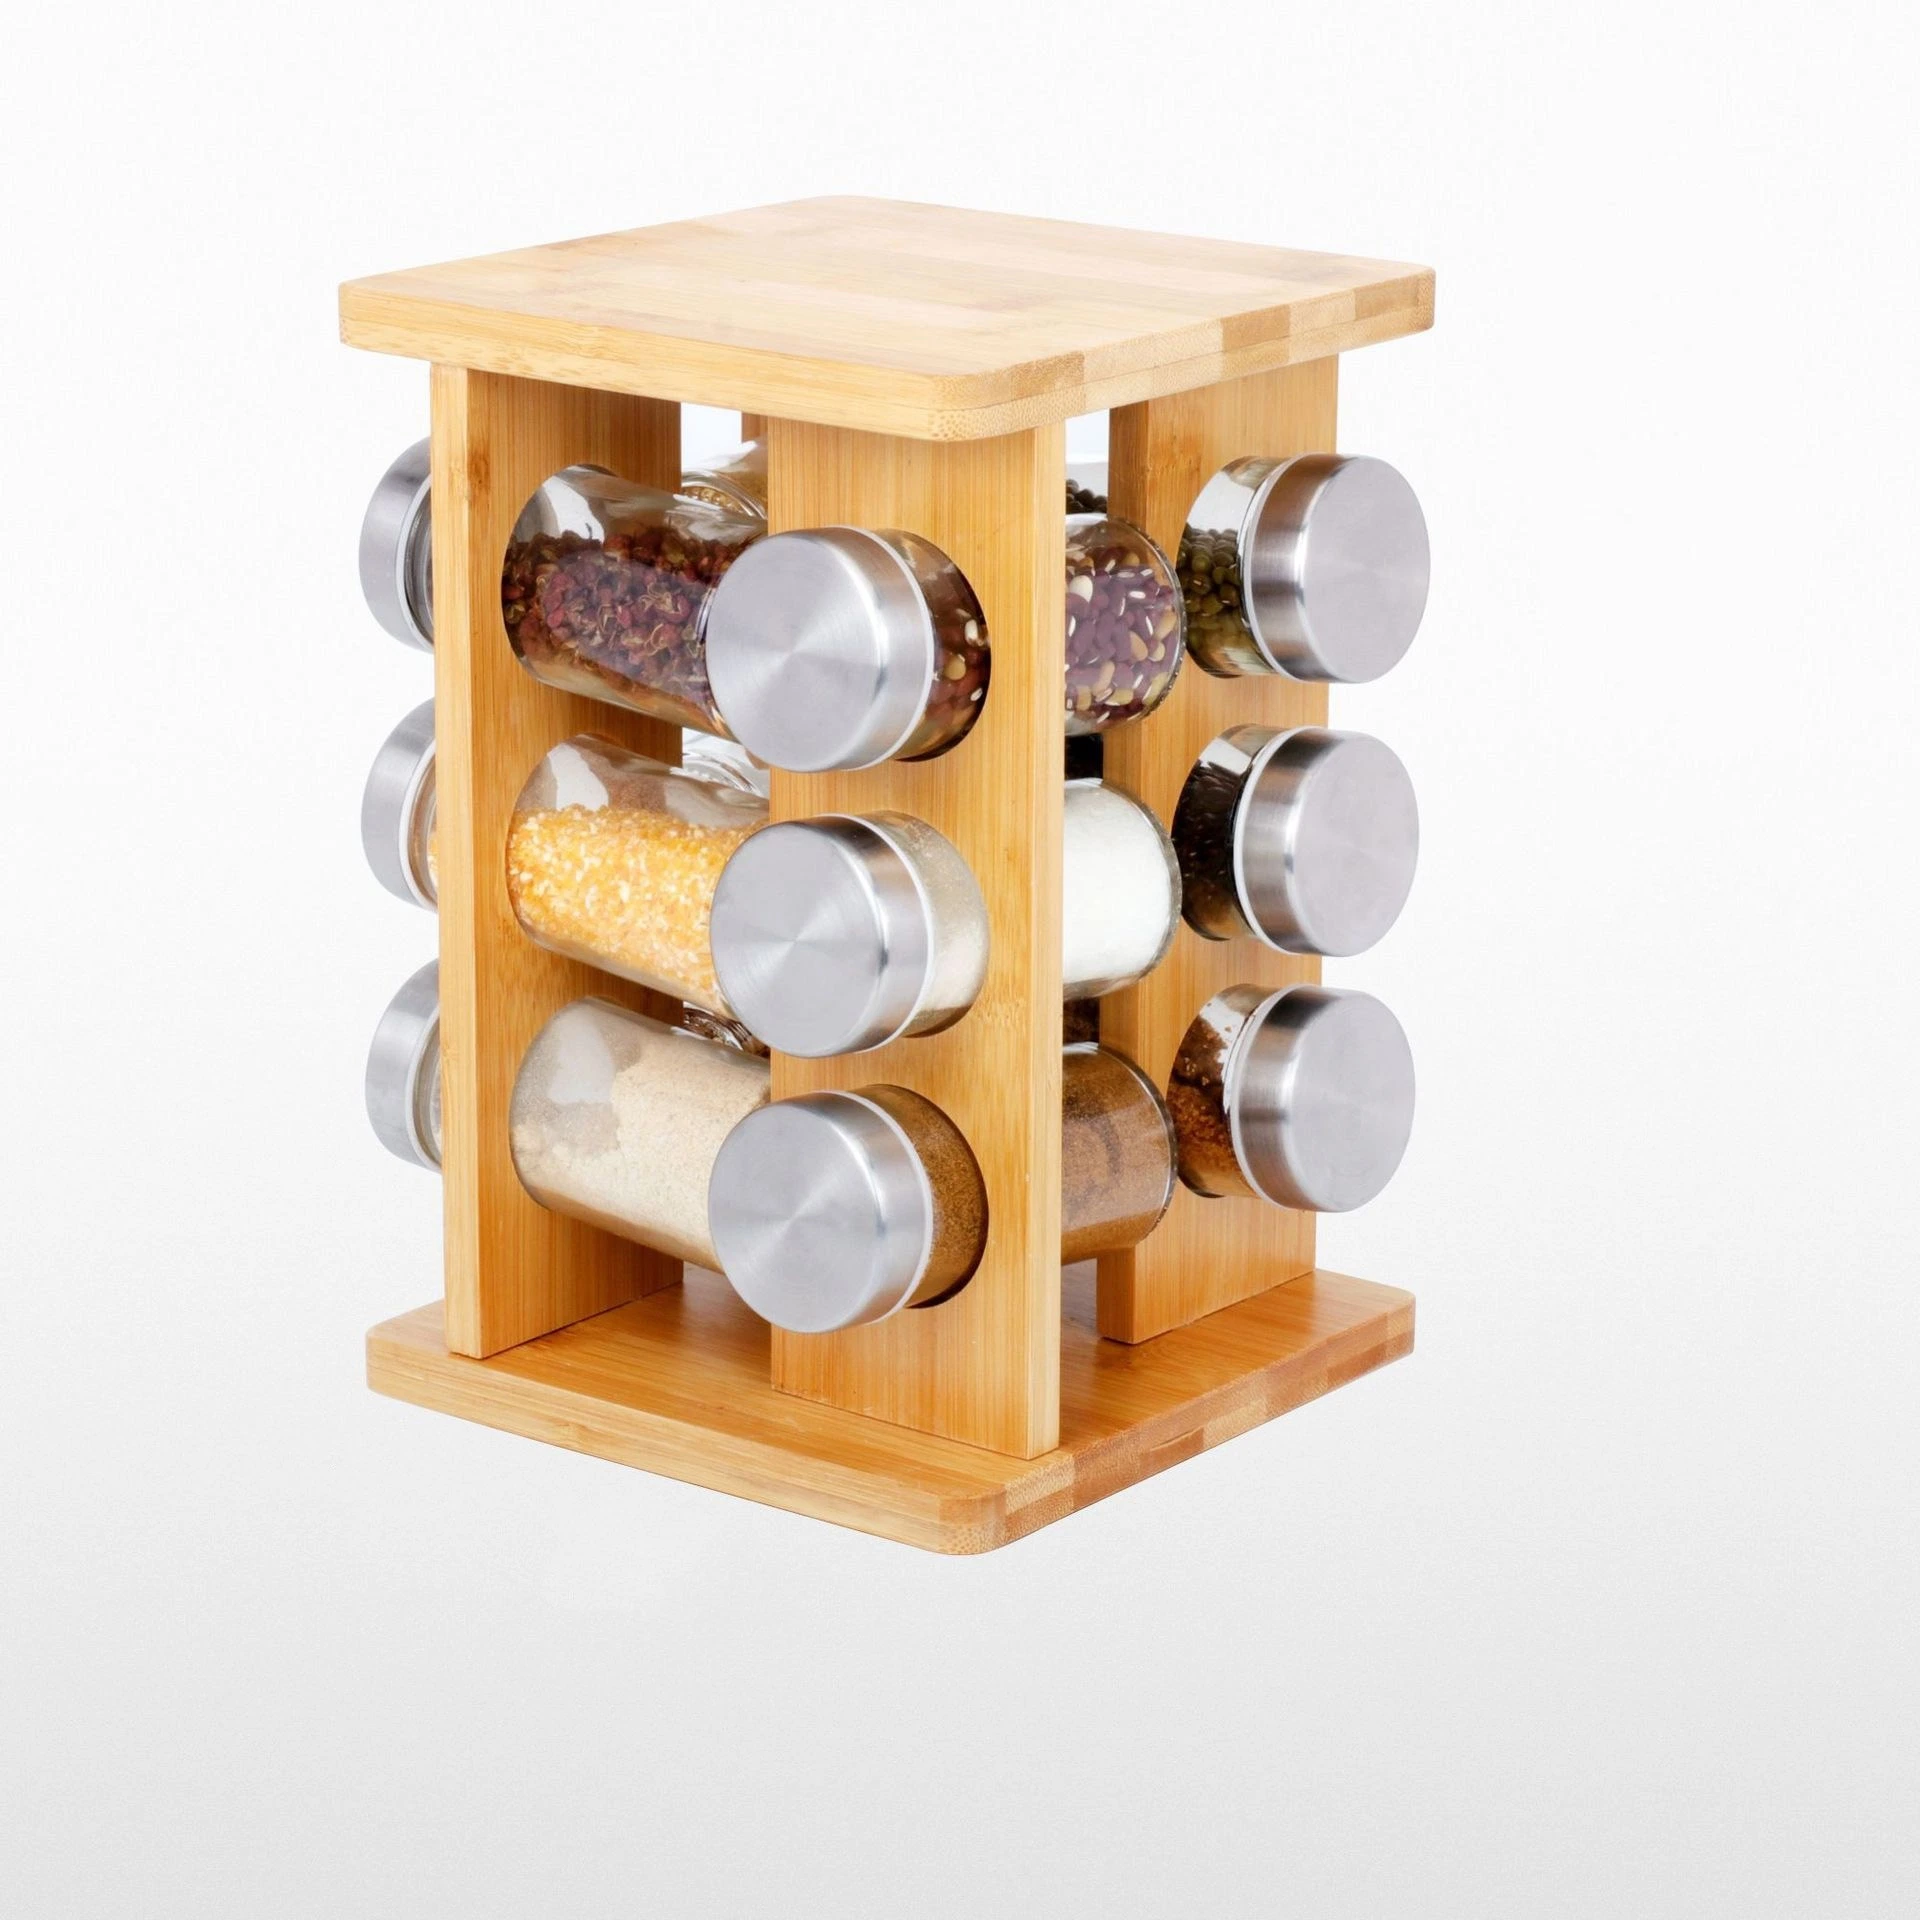 12 Seasoning Jar Spices Storage Wooden Spice Organizer Tower Round Kitchen Seasoning Rack Bl16340